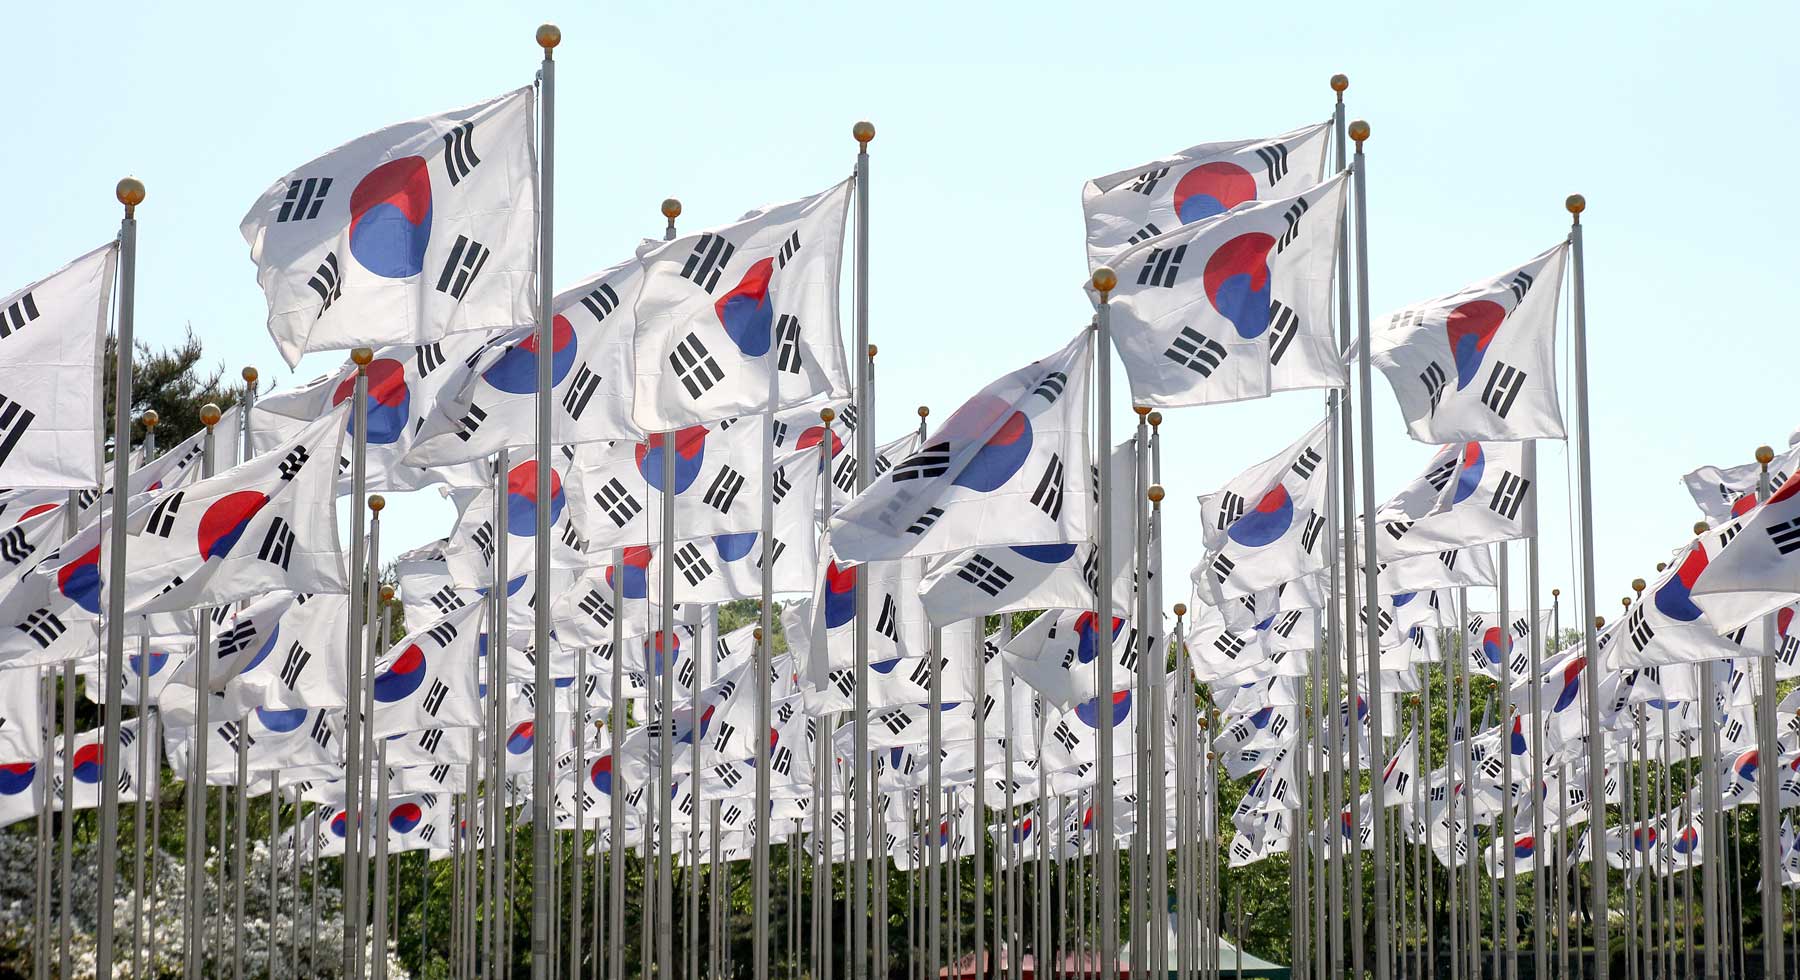 Korean Flag in Korean 태극기